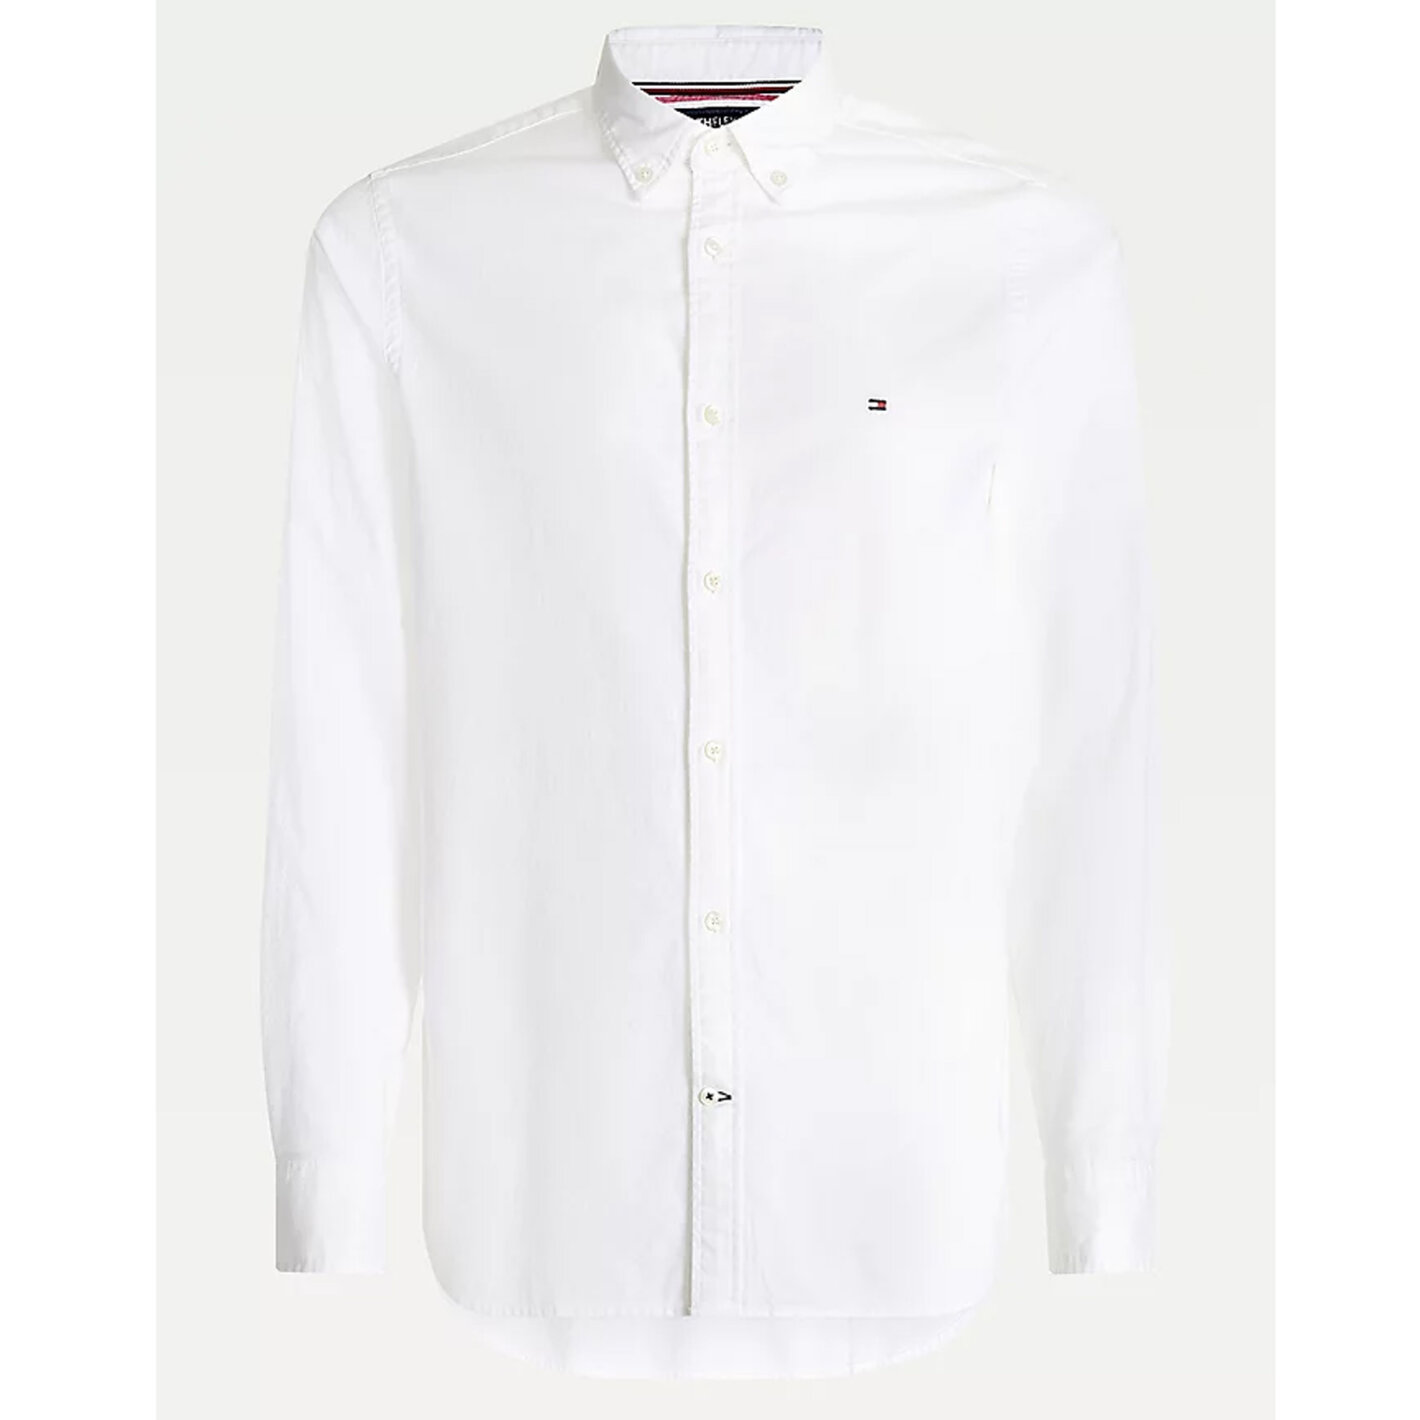 Skjorter - Tommy Hilfiger - Hilfiger - TH Flex dobby slim shirt | Skjorte Hvid